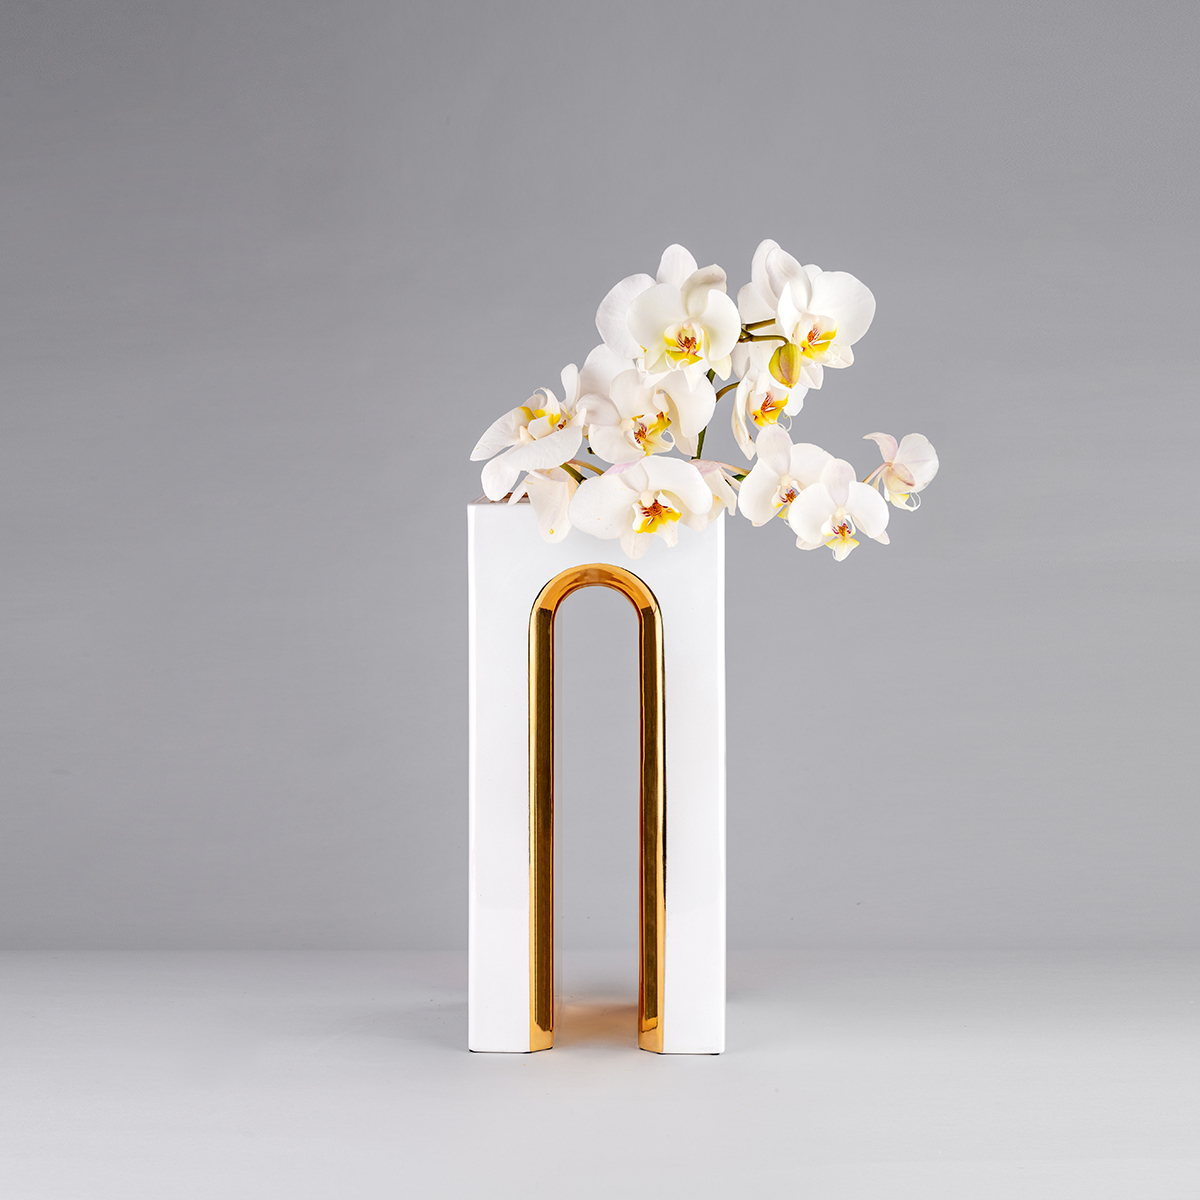 Marcello - Flower vase